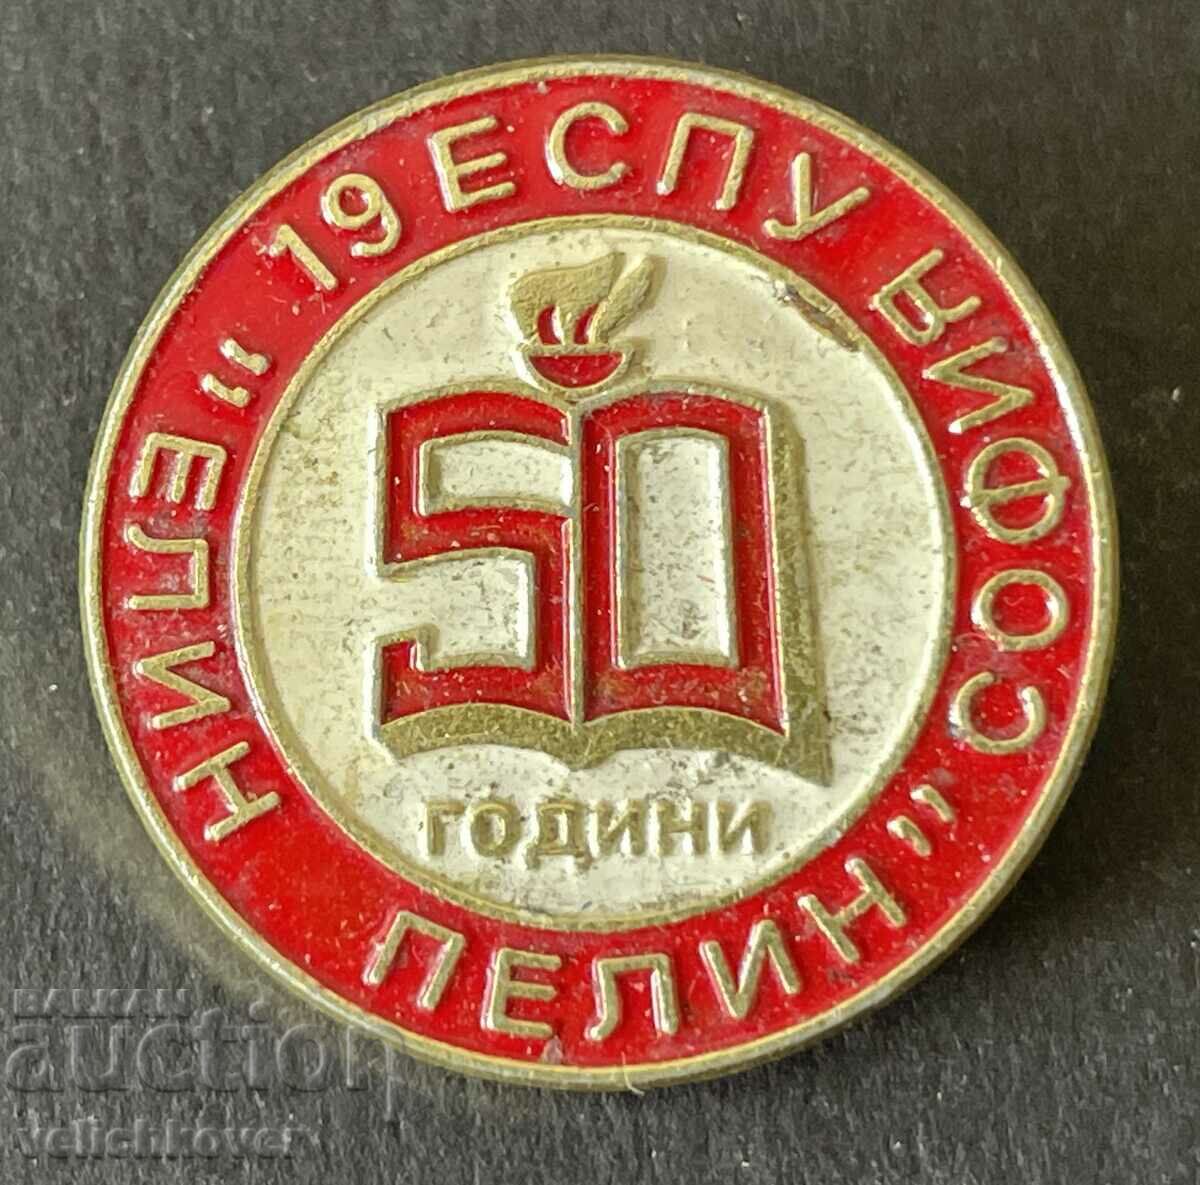 36953 Βουλγαρία υπογράφει 50 χρόνια. 19ο Σχολείο Γλωσσών Elin Pelin So